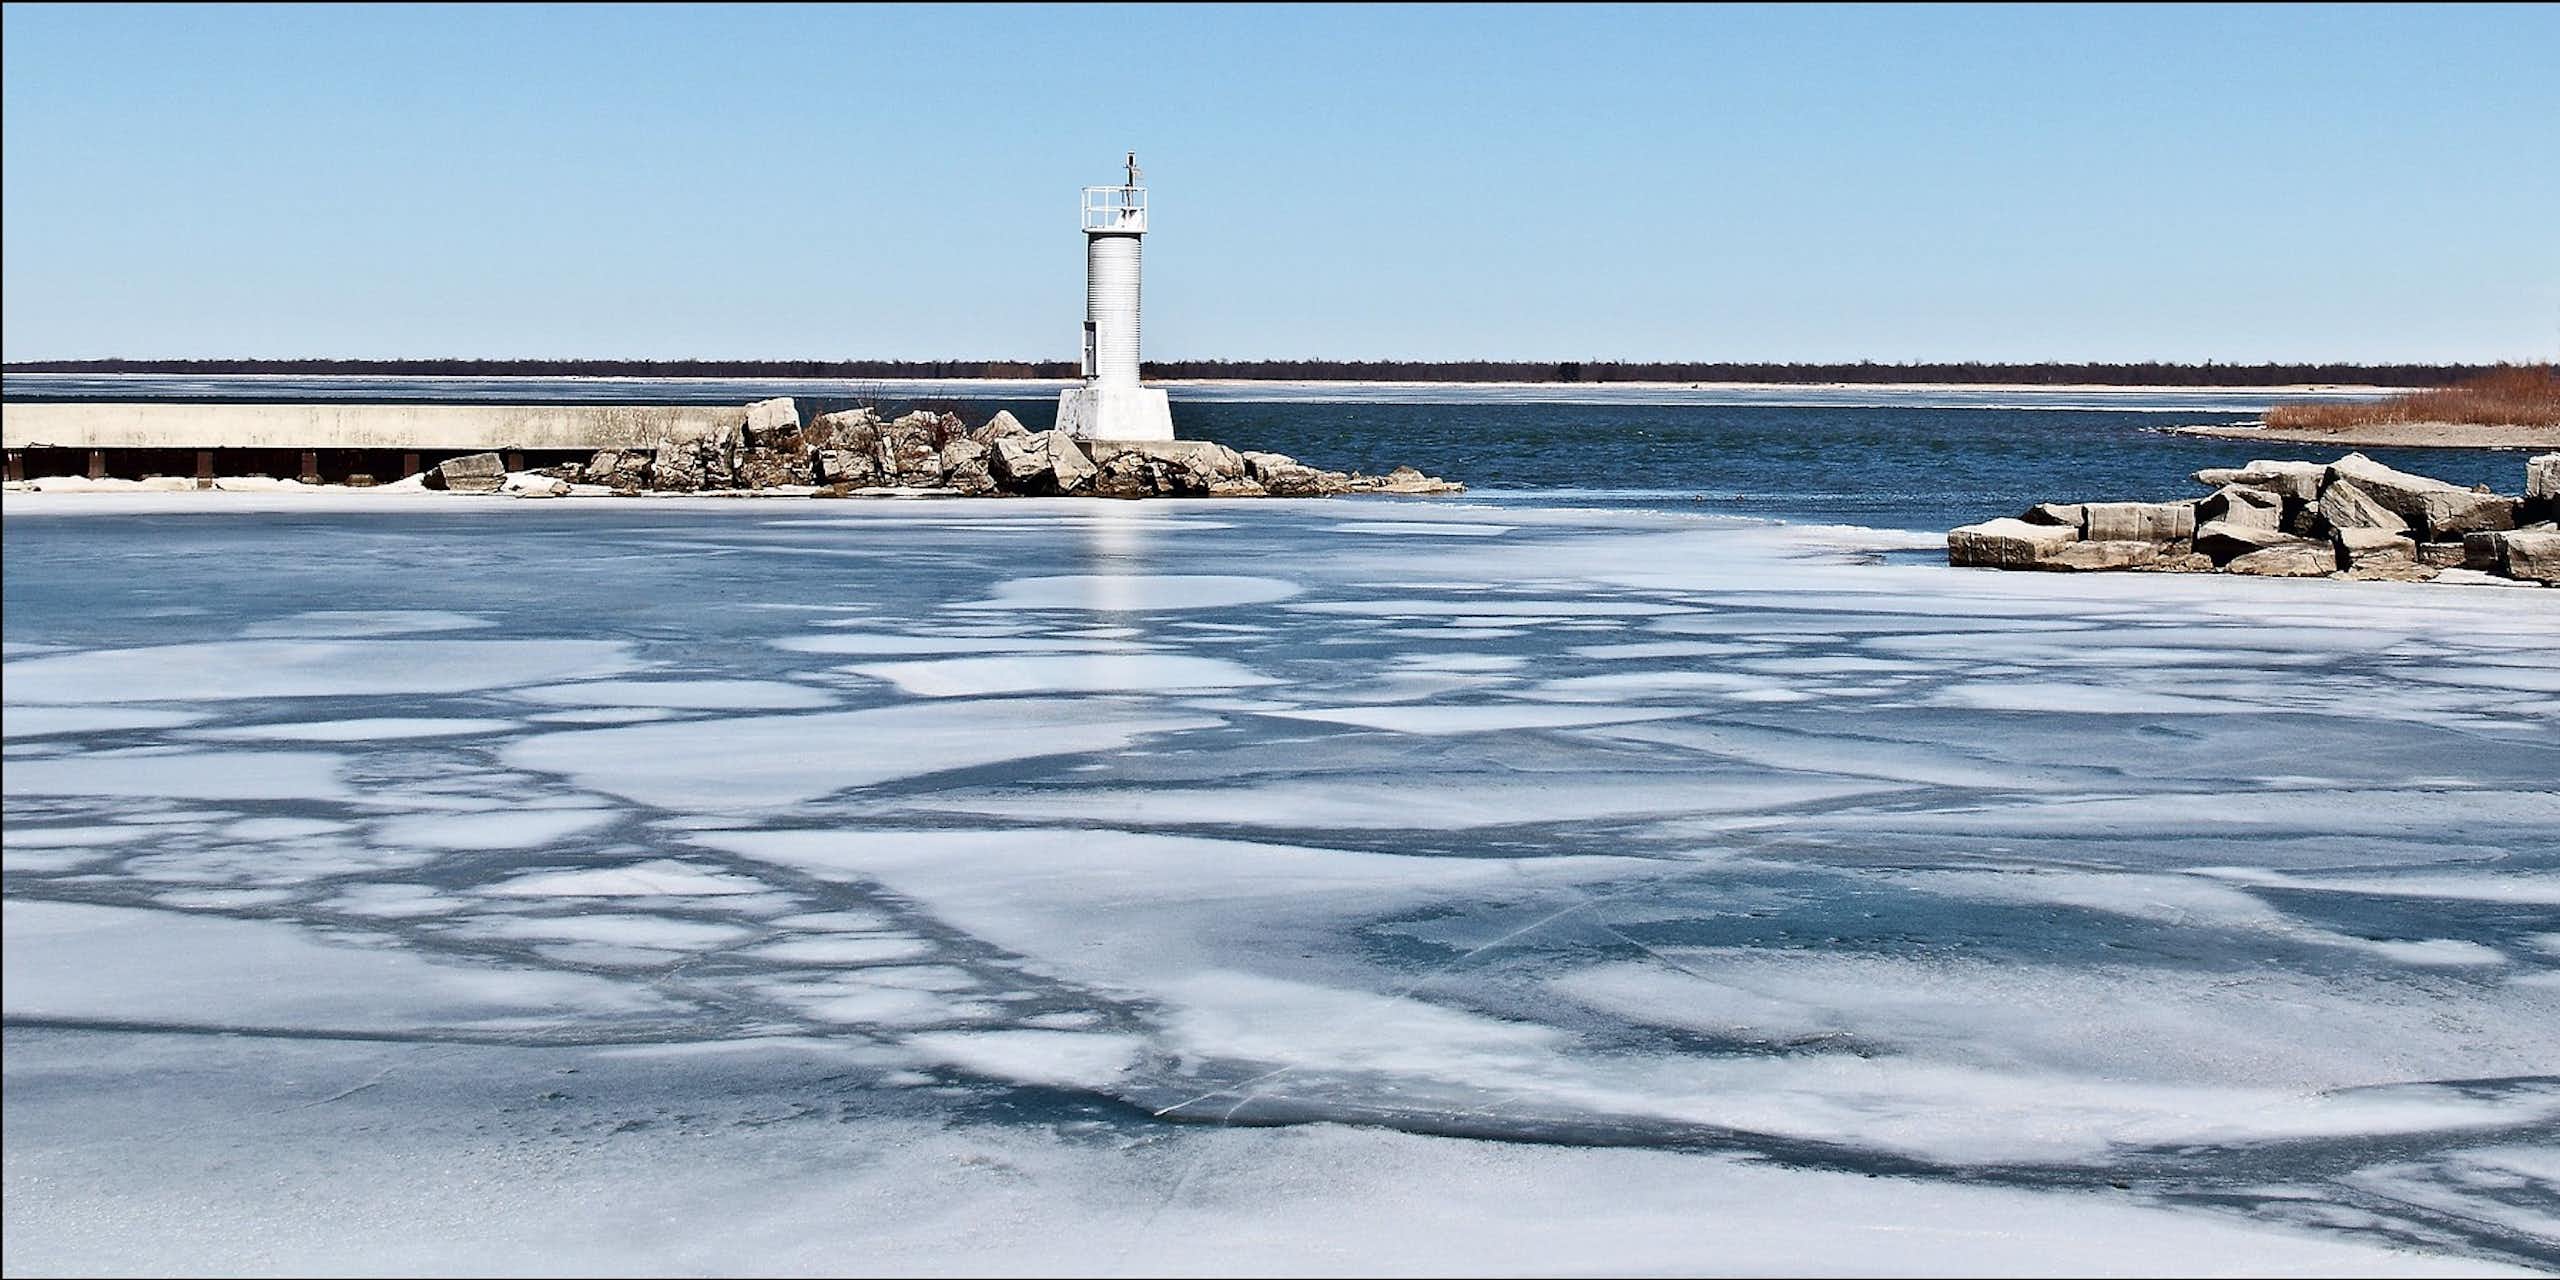 Thin ice near a lighthouse.